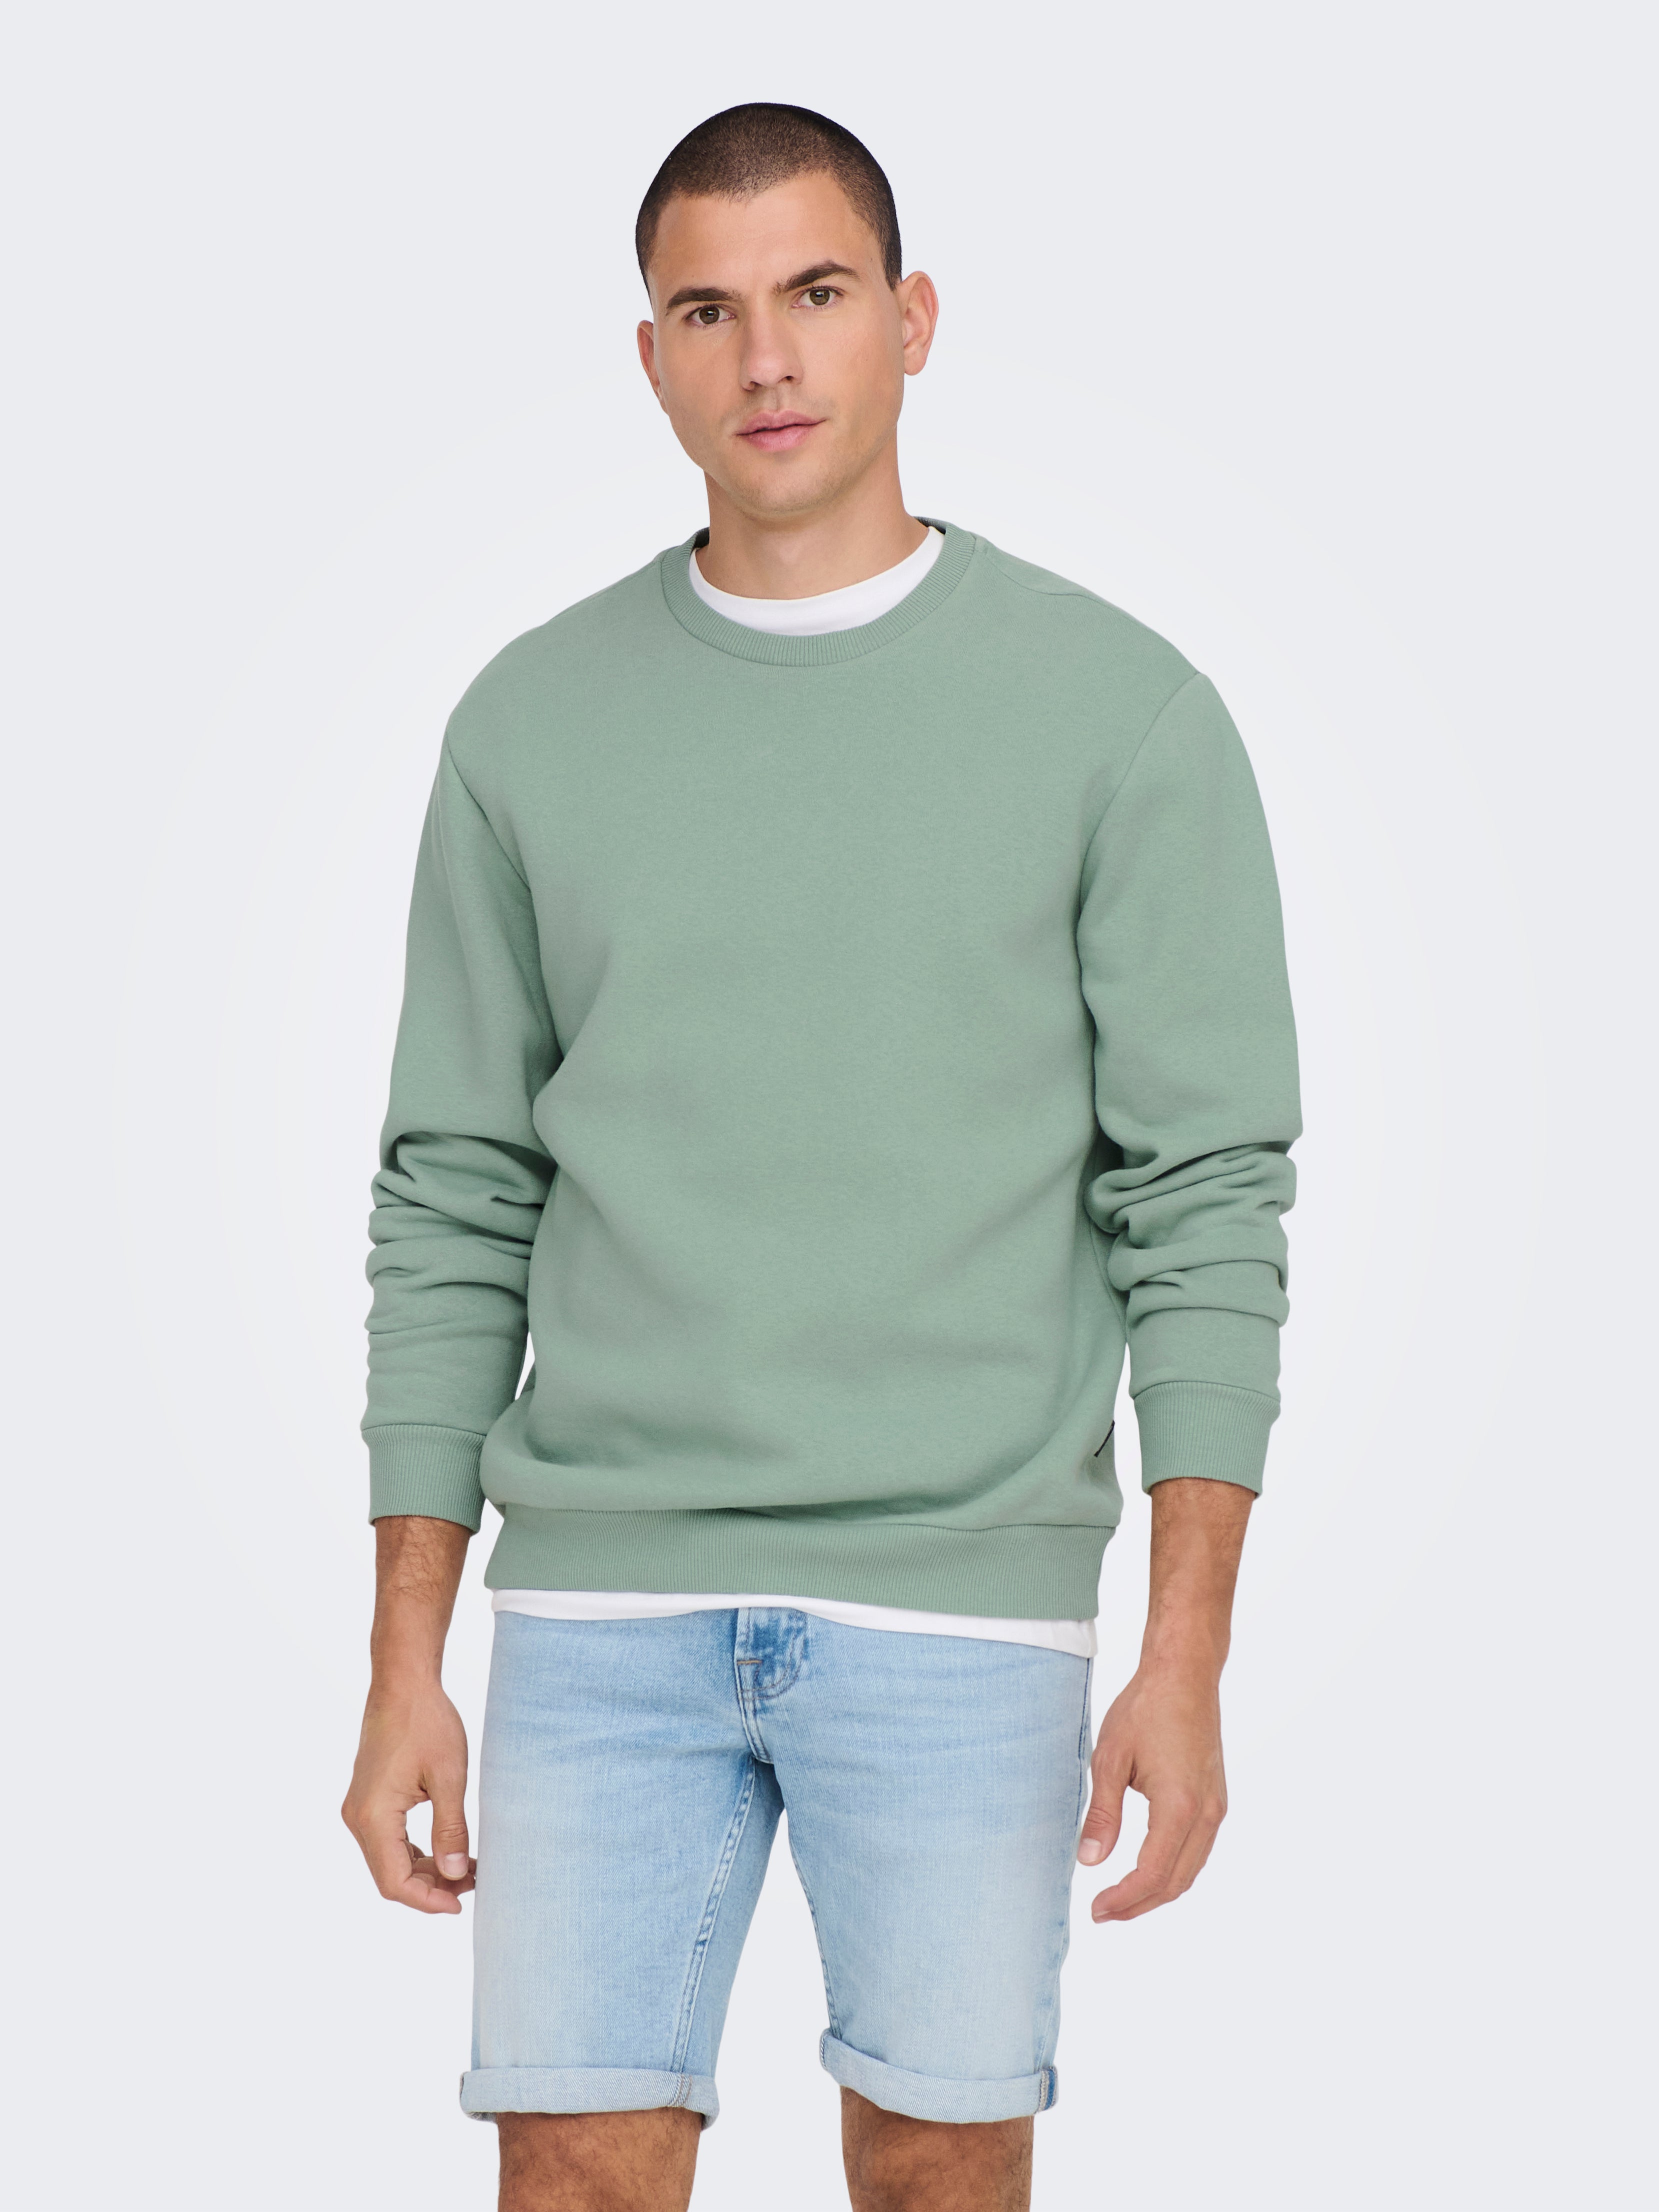 Regular Fit Round Neck Sweatshirts | Medium Grey | ONLY & SONS®